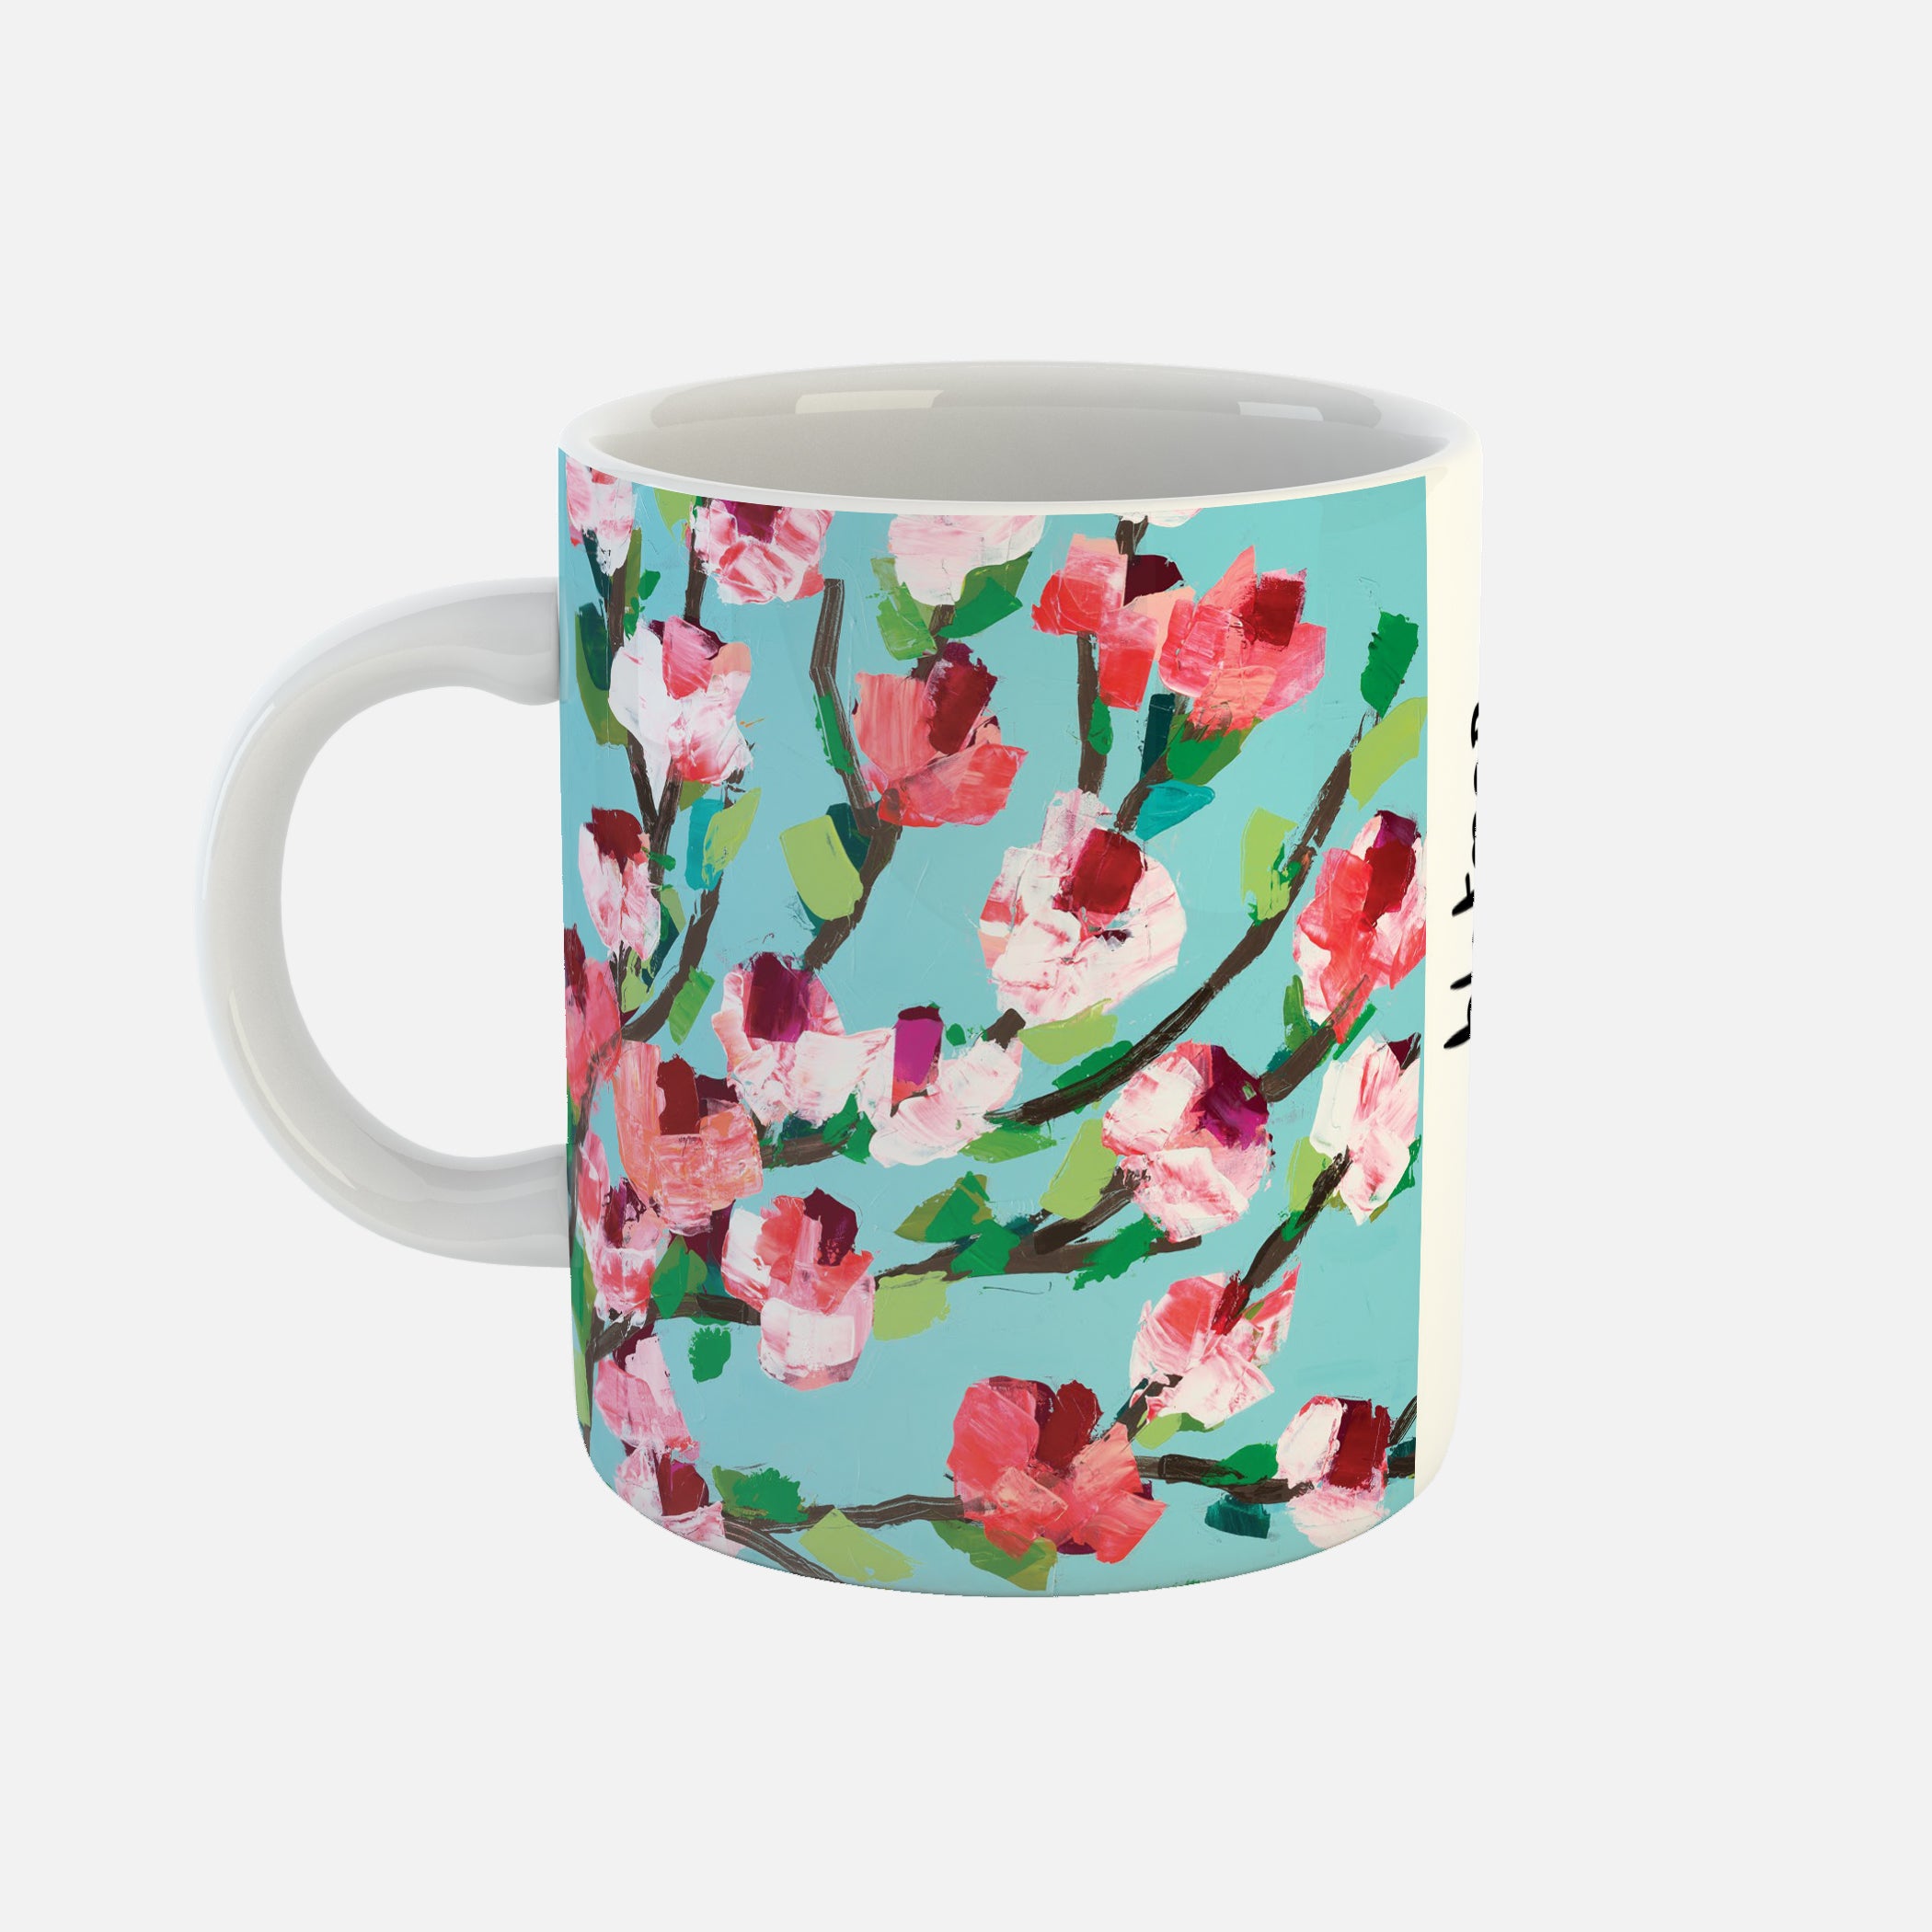 Pip - Ceramic Mug